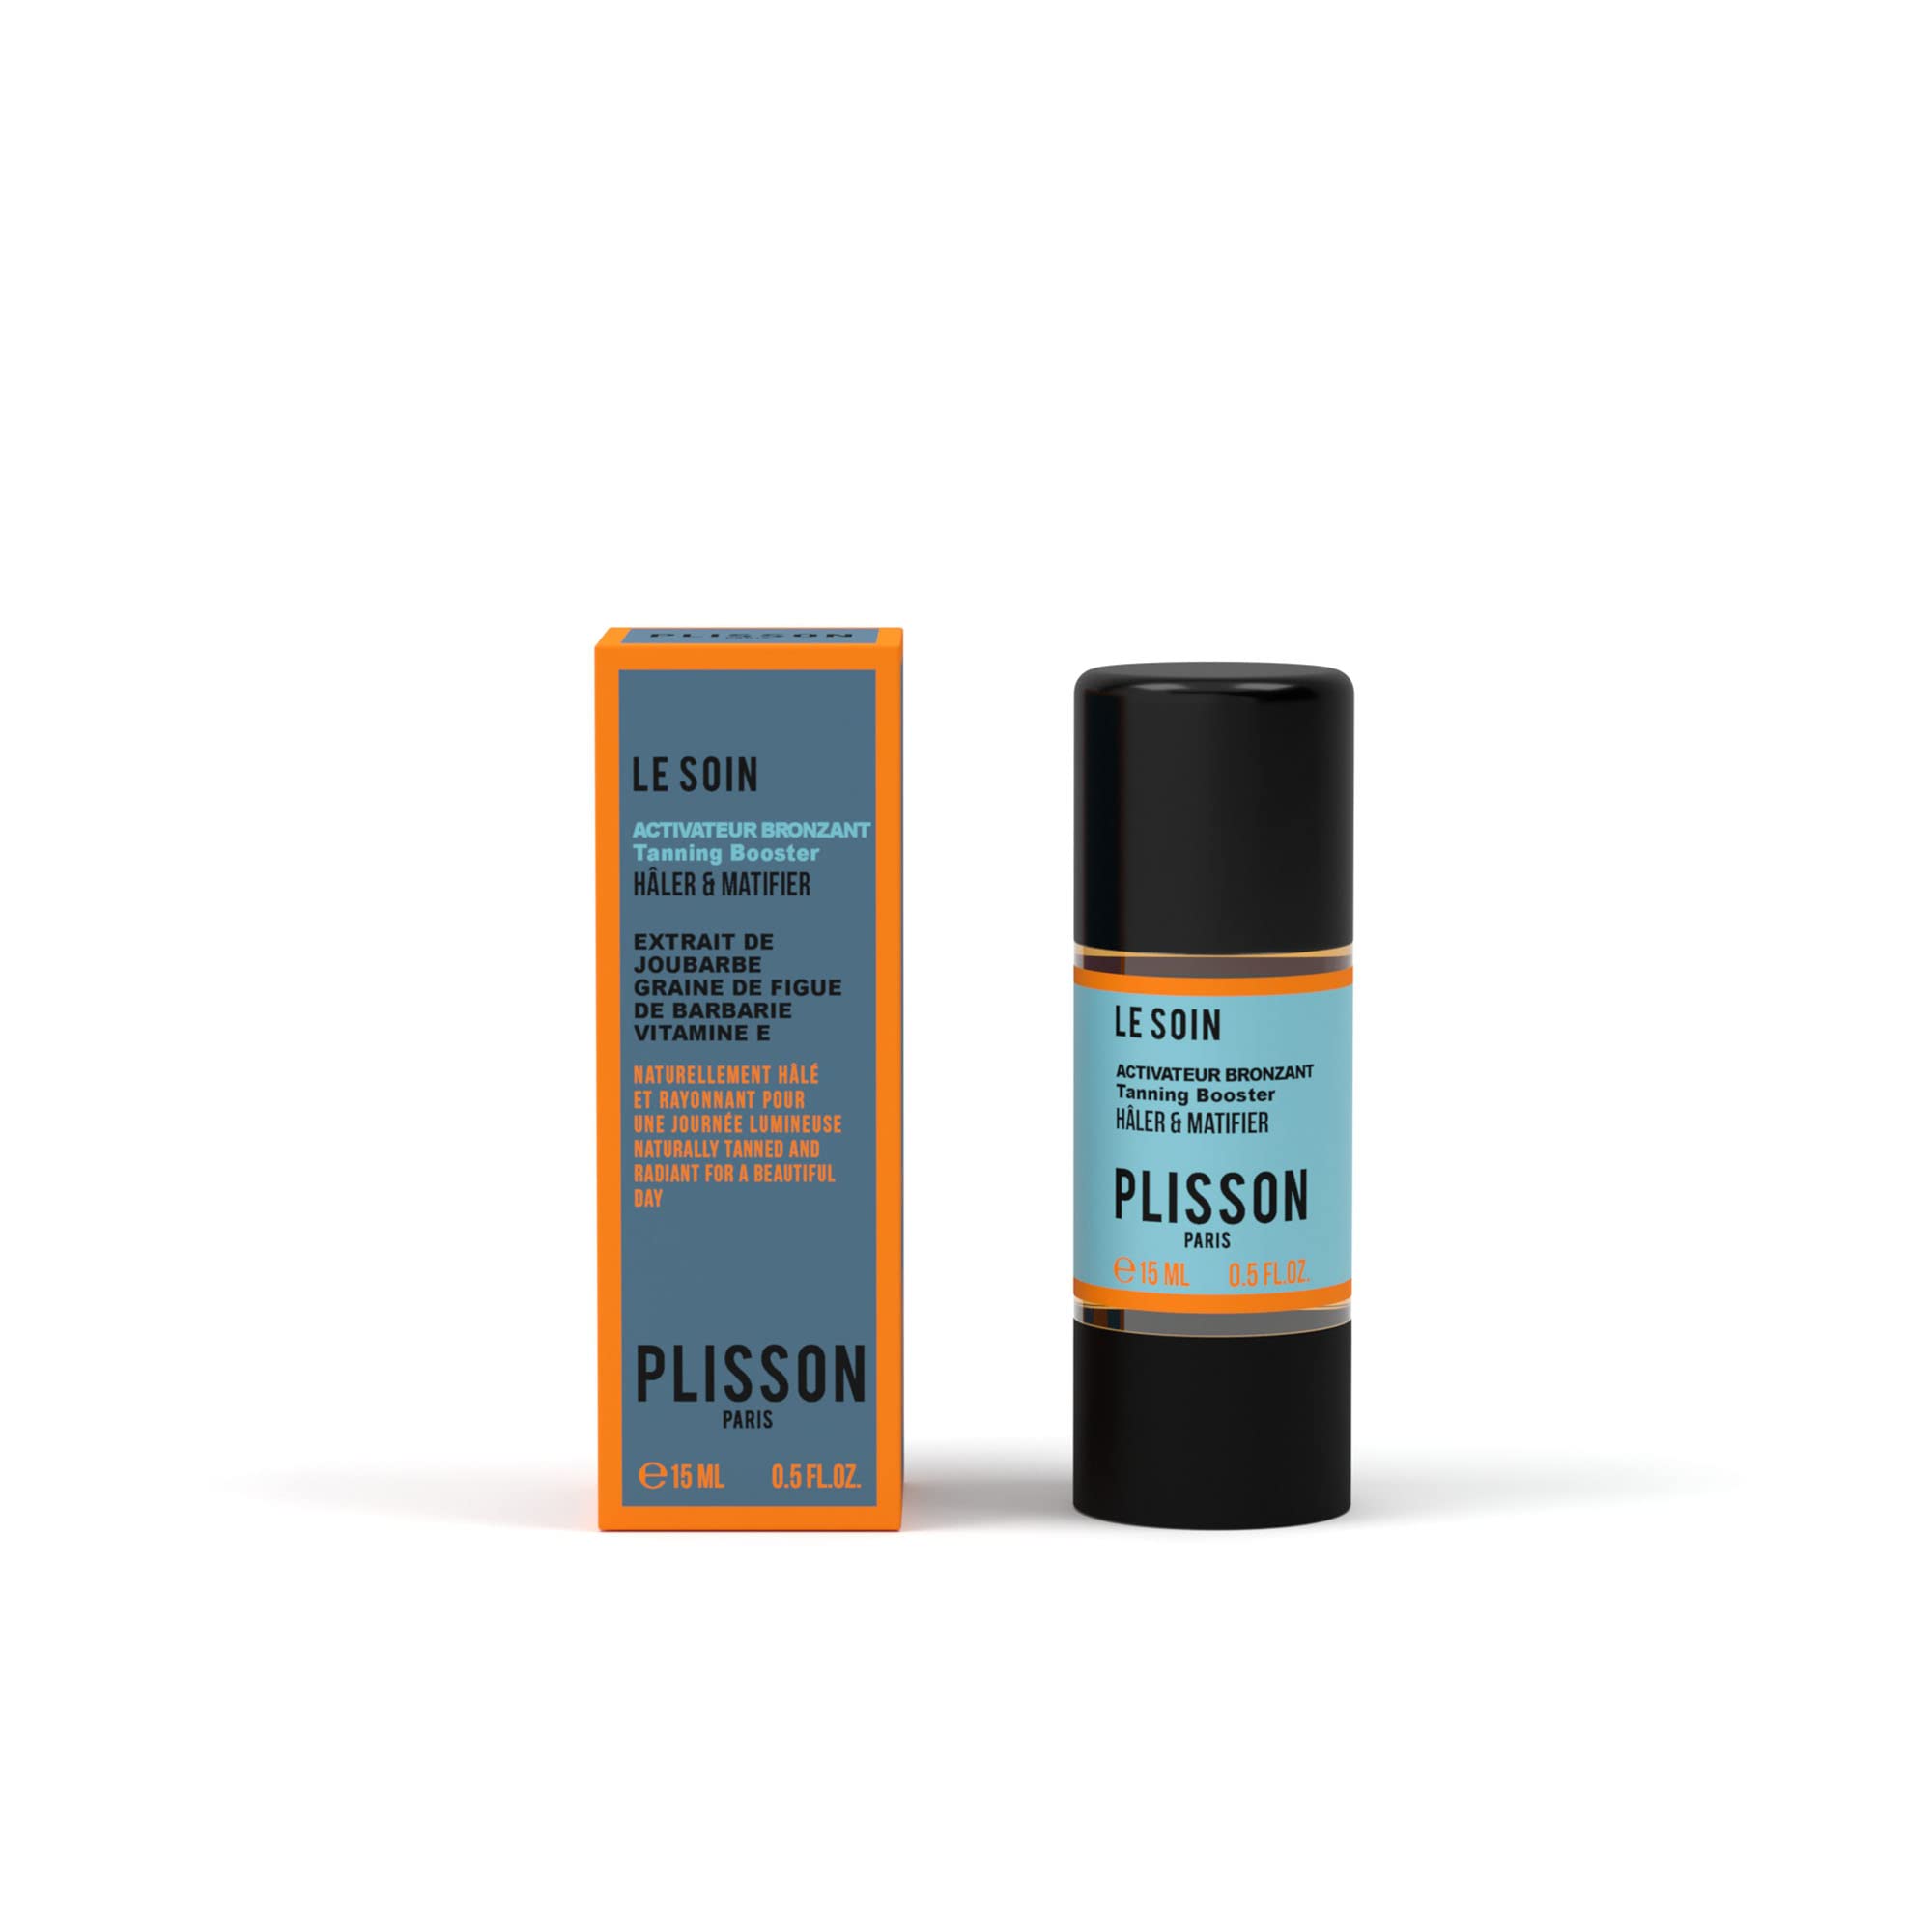 Plisson - Bräunungsaktivator – für alle Hauttypen – 99% Inhaltsstoffe natürlichen Ursprungs, Extrakt aus Hauswurz, Kaktusfeige und natürliches Vitamin E